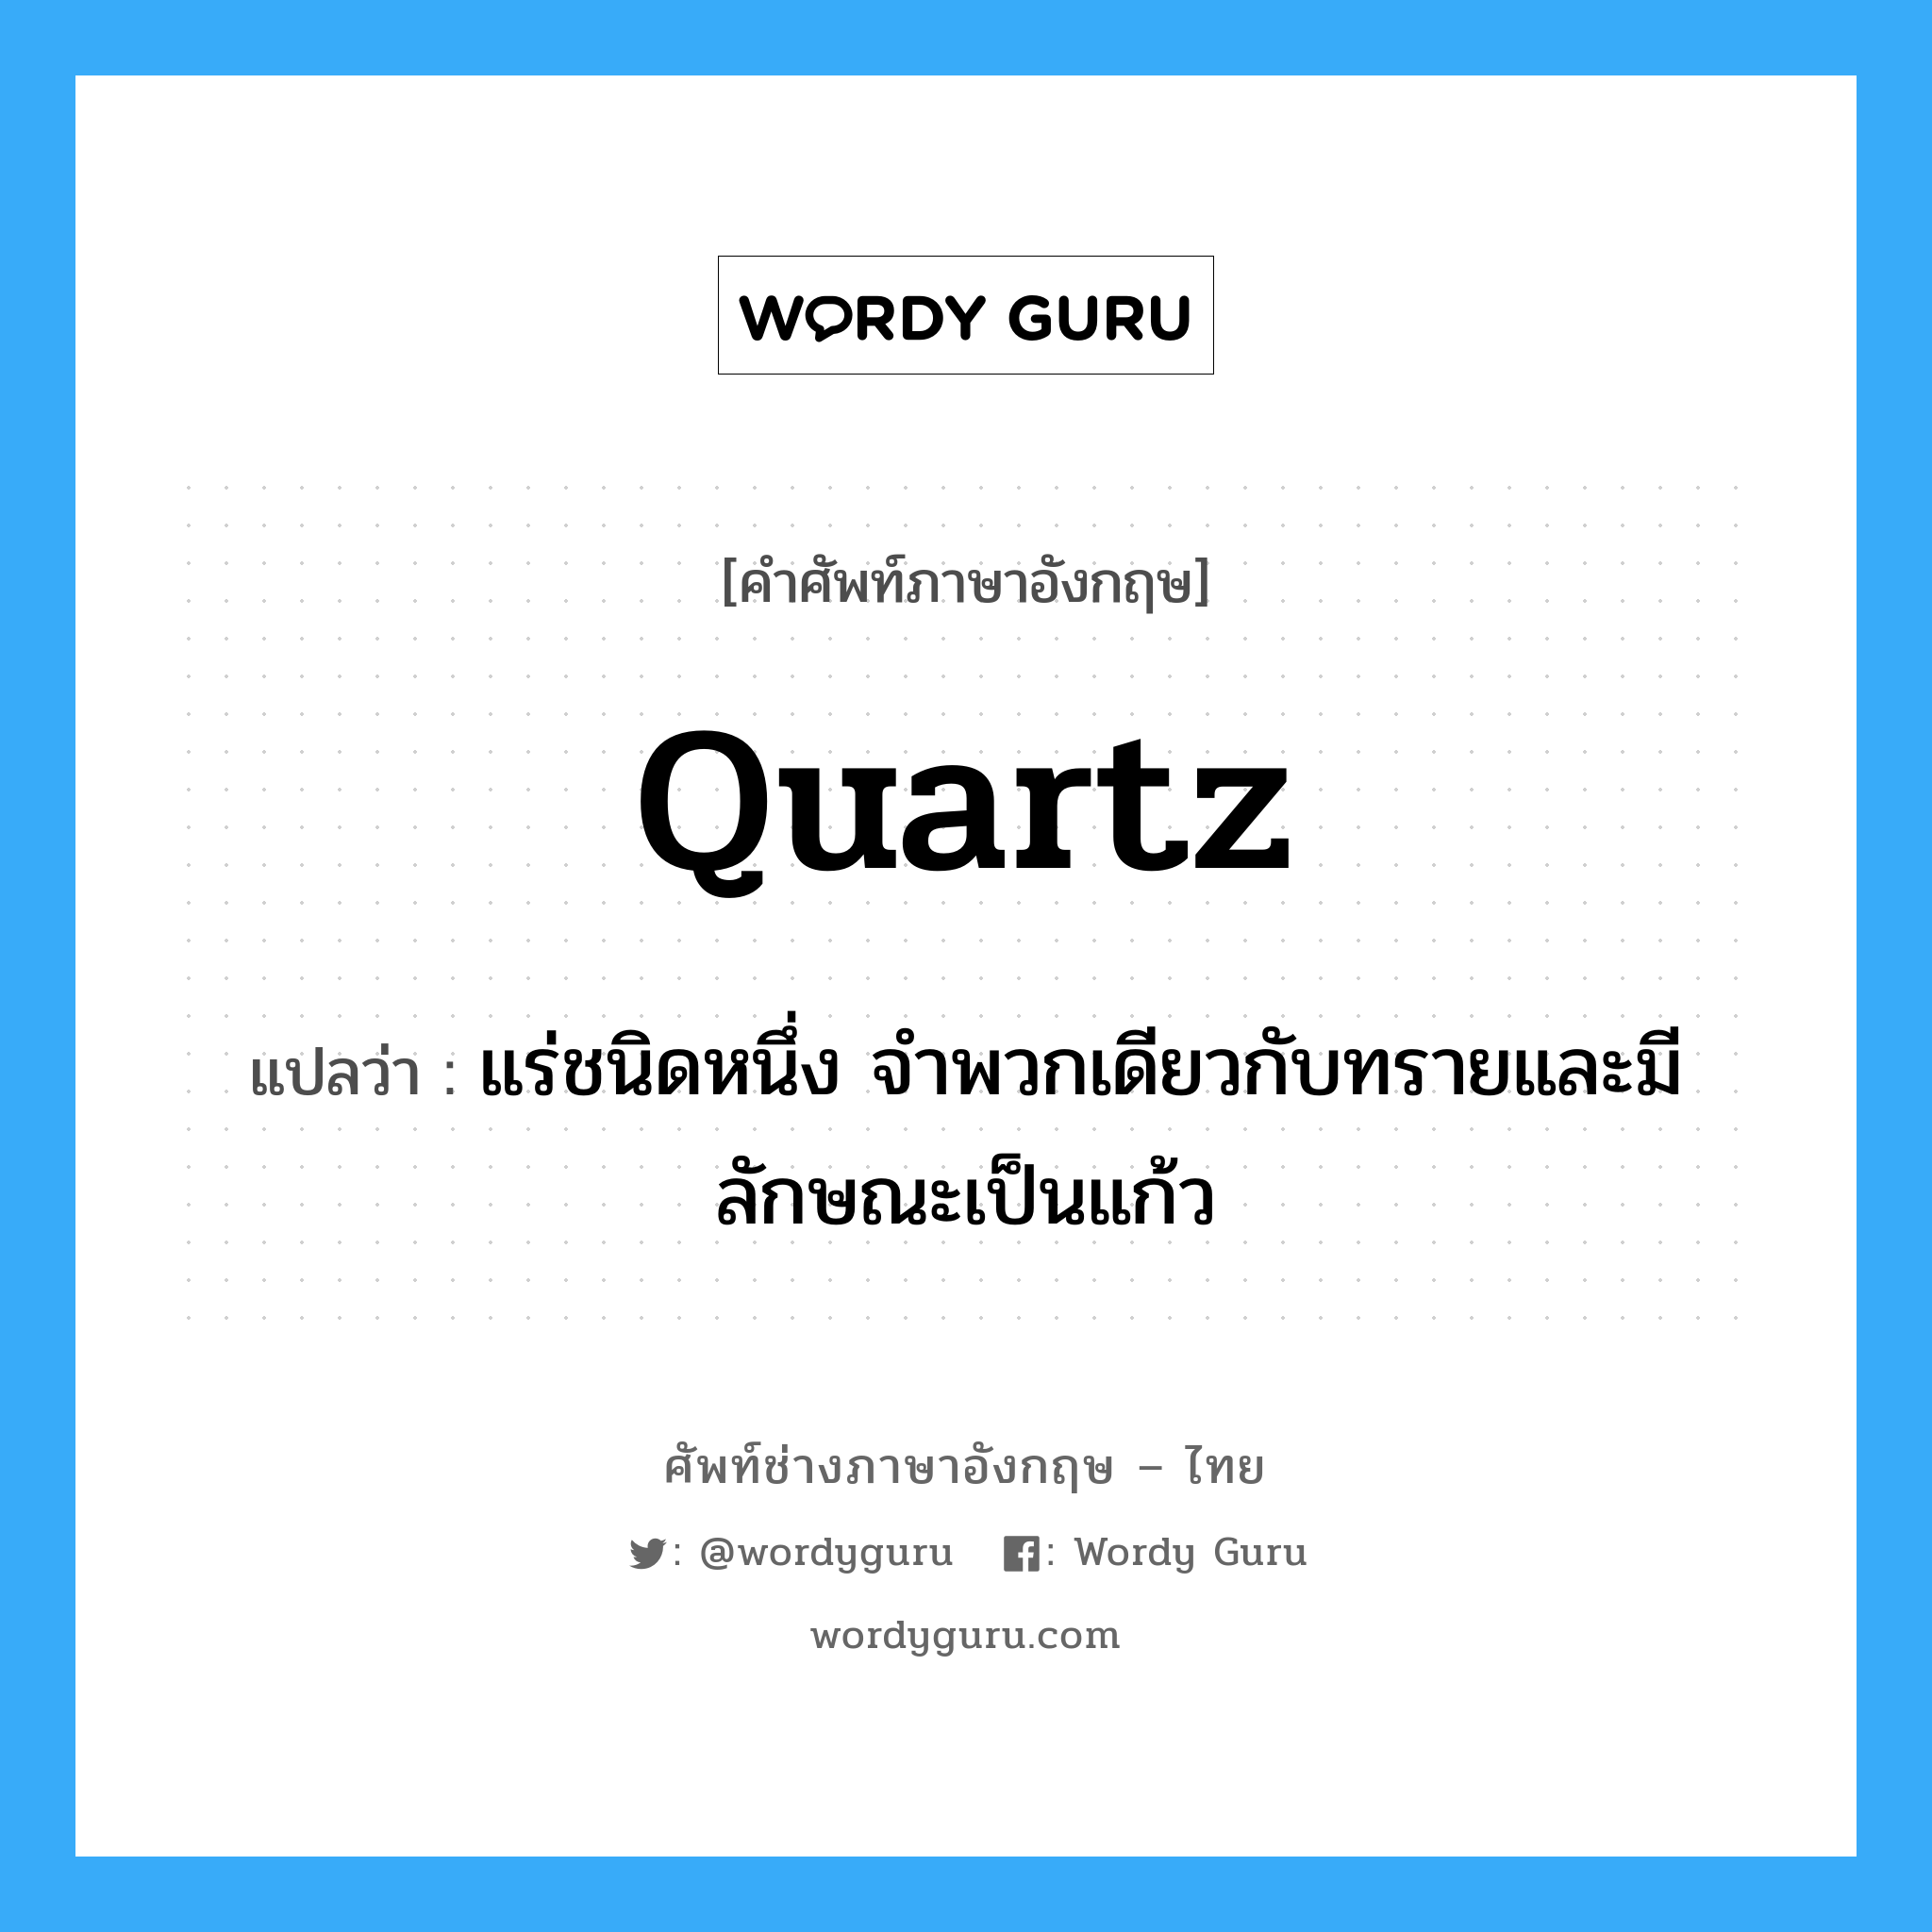 quartz แปลว่า?, คำศัพท์ช่างภาษาอังกฤษ - ไทย quartz คำศัพท์ภาษาอังกฤษ quartz แปลว่า แร่ชนิดหนึ่ง จำพวกเดียวกับทรายและมีลักษณะเป็นแก้ว